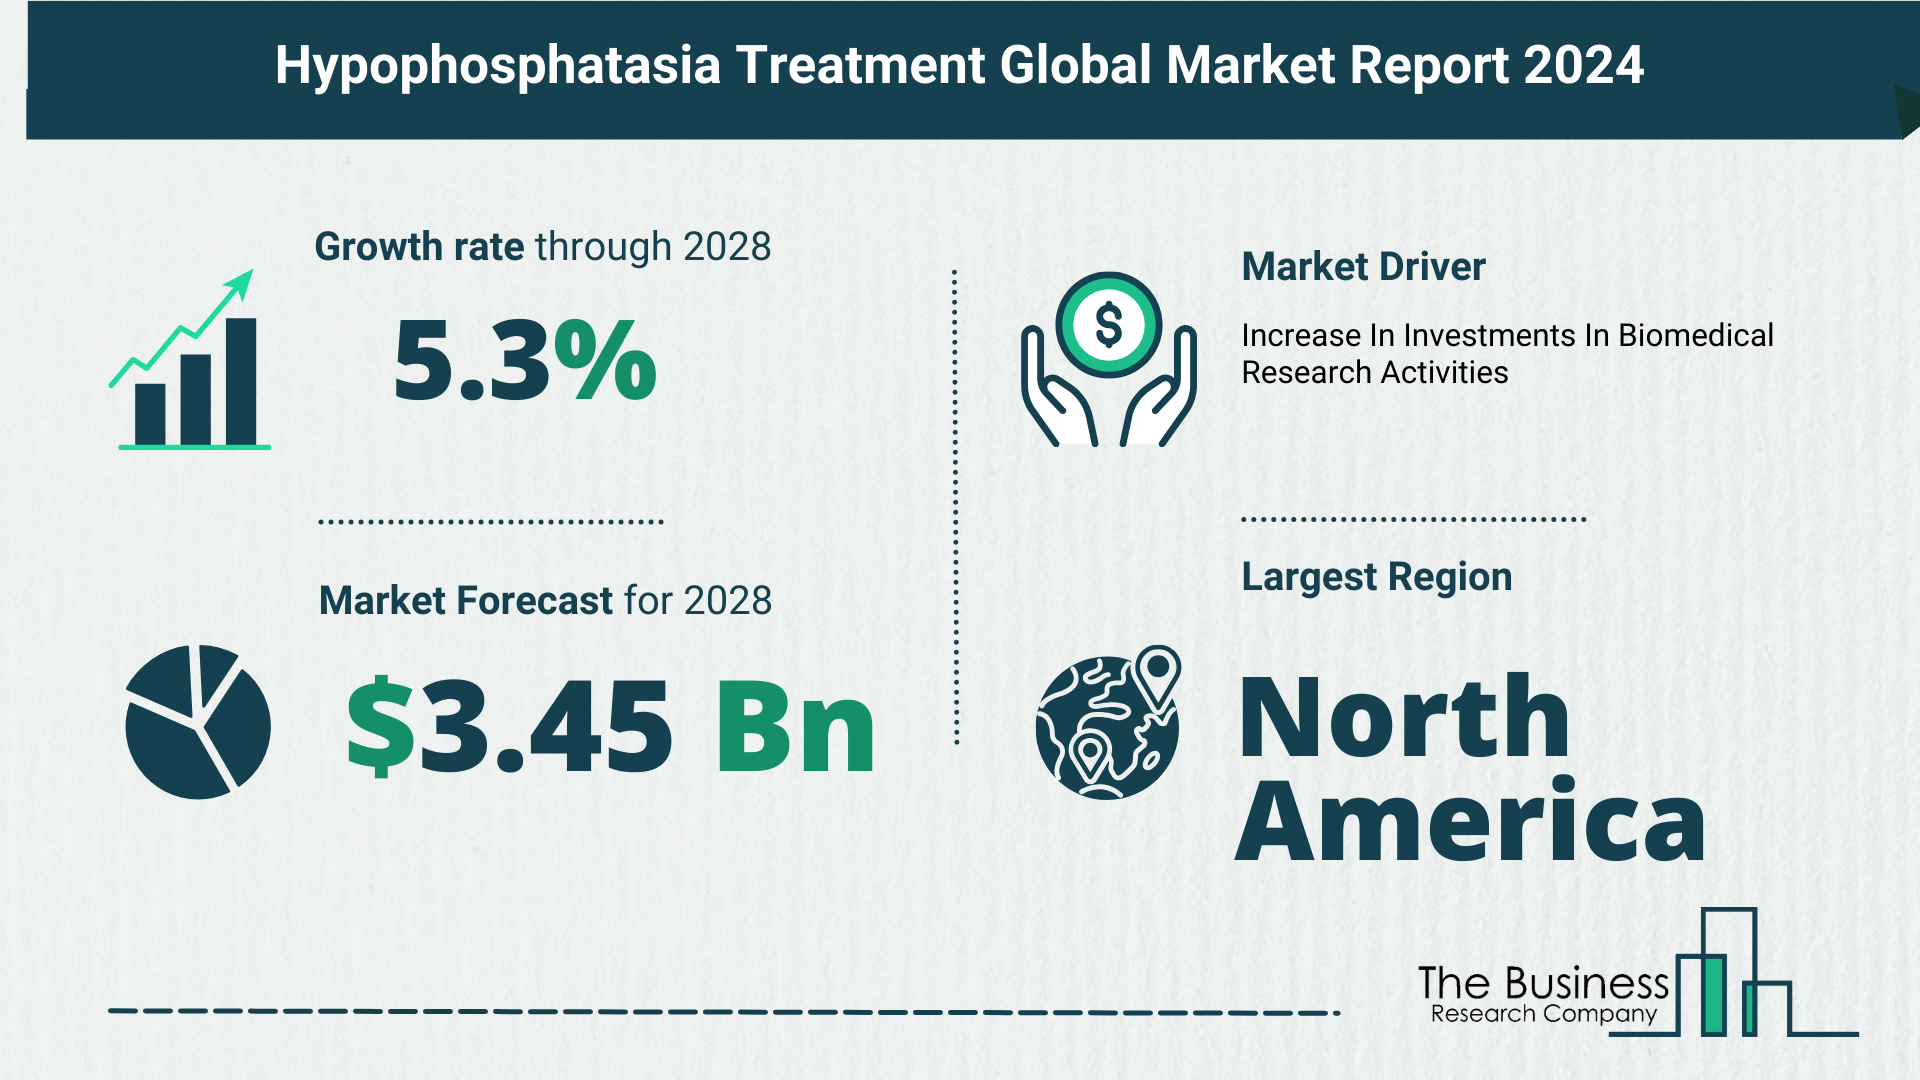 Hypophosphatasia Treatment Market Forecast 2024: Forecast Market Size, Drivers And Key Segments